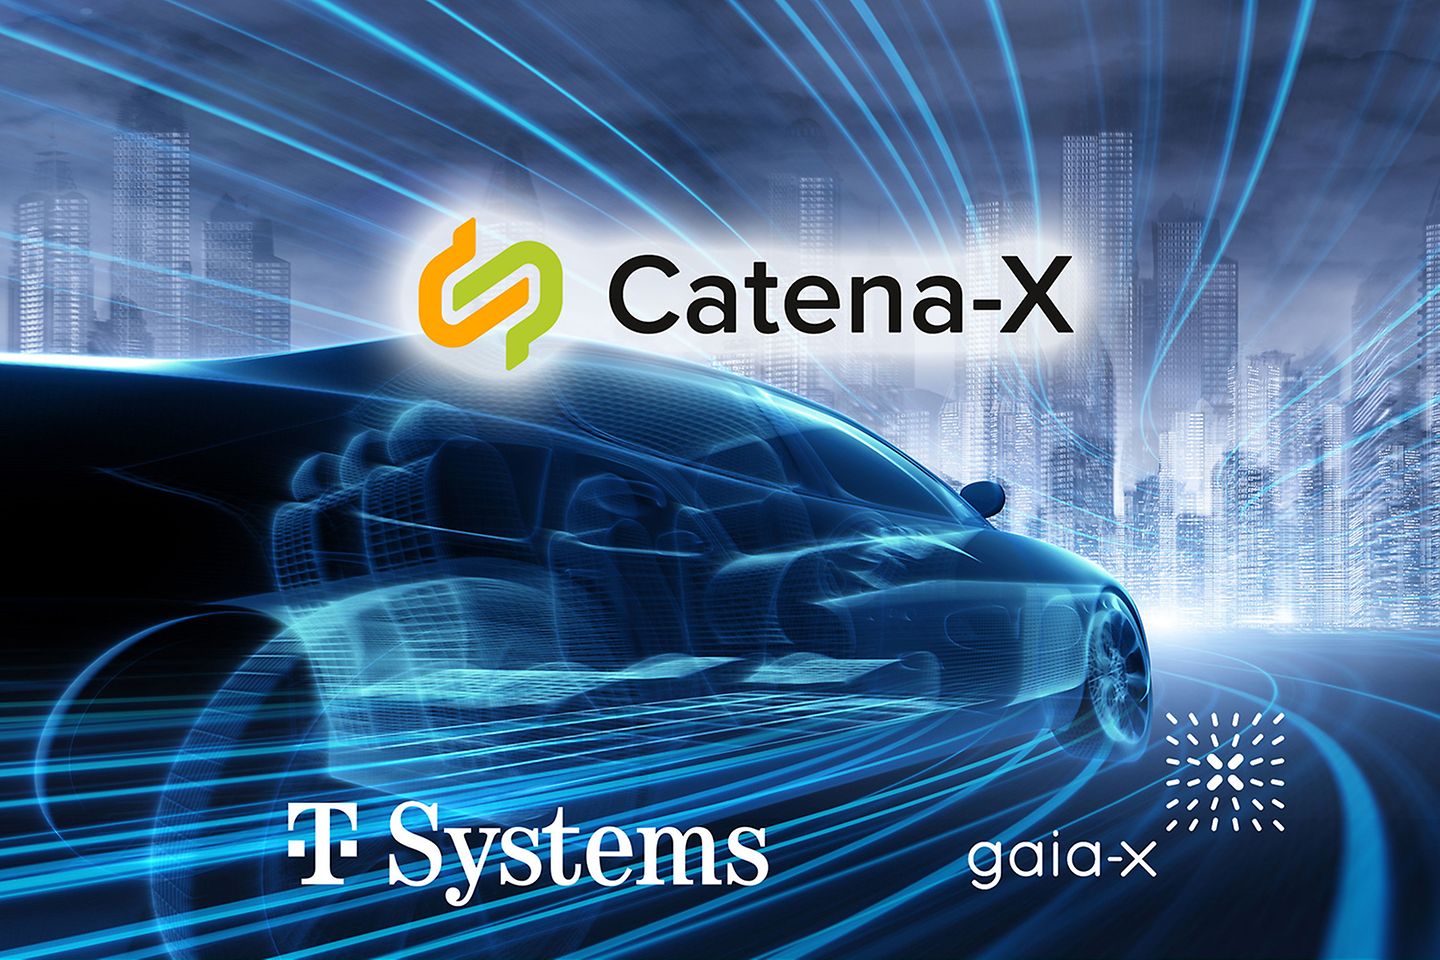 Een algemene moderne auto met T-Systems en Catena X-logo.